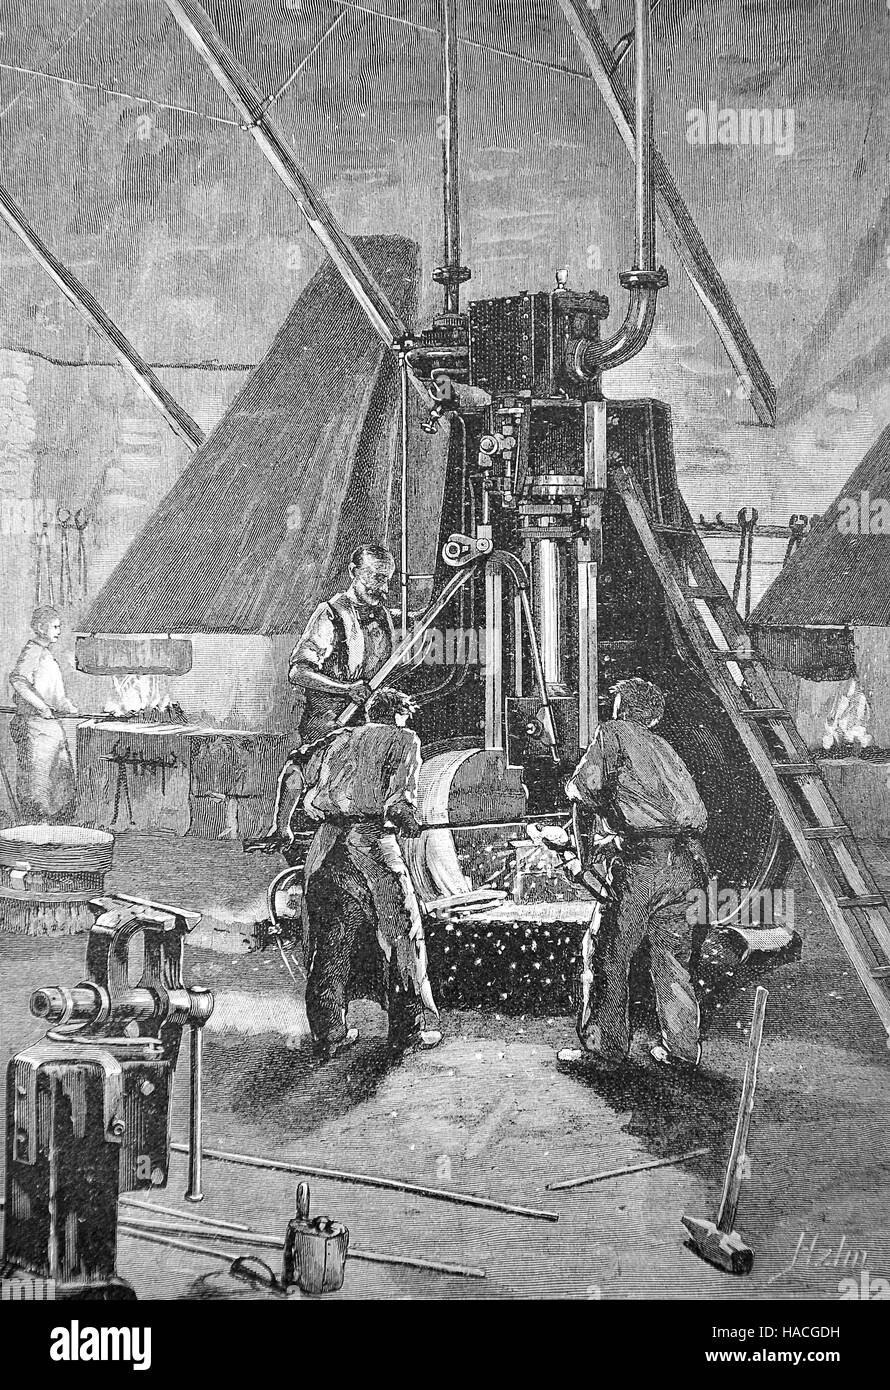 Un marteau à vapeur, un pouvoir marteau pilon mu par la vapeur, travail des métaux, 1845, gravure sur bois, l'illustration historique Banque D'Images